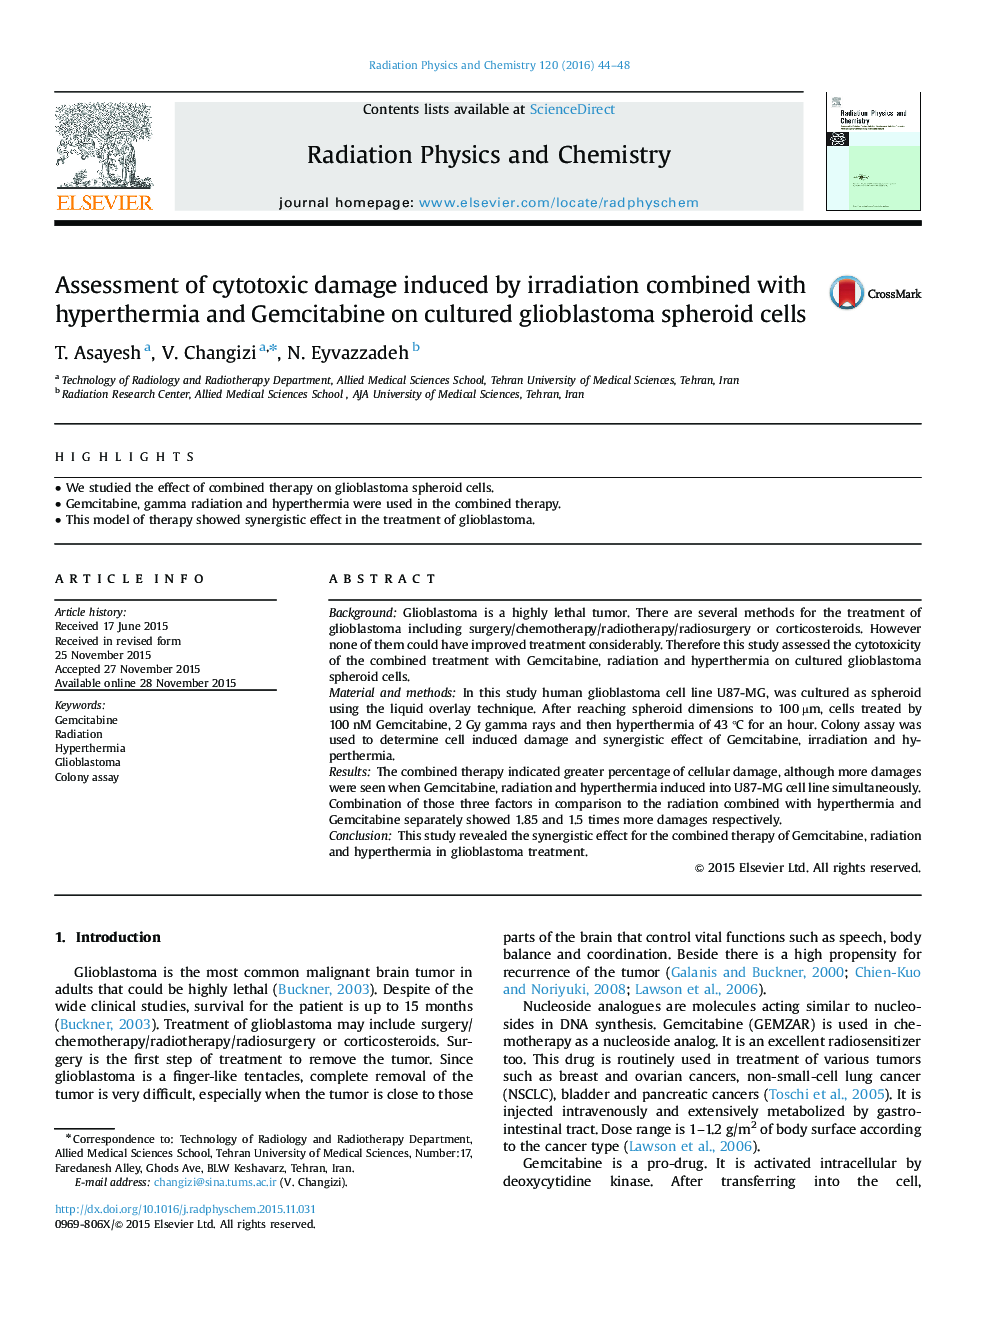 ارزیابی آسیب های سیتوتوکسیک ناشی از اشعه در ترکیب با هیپرترمی و گمسیتابین در سلول های سلولی اسفروئیدی گلوبلاستوما 